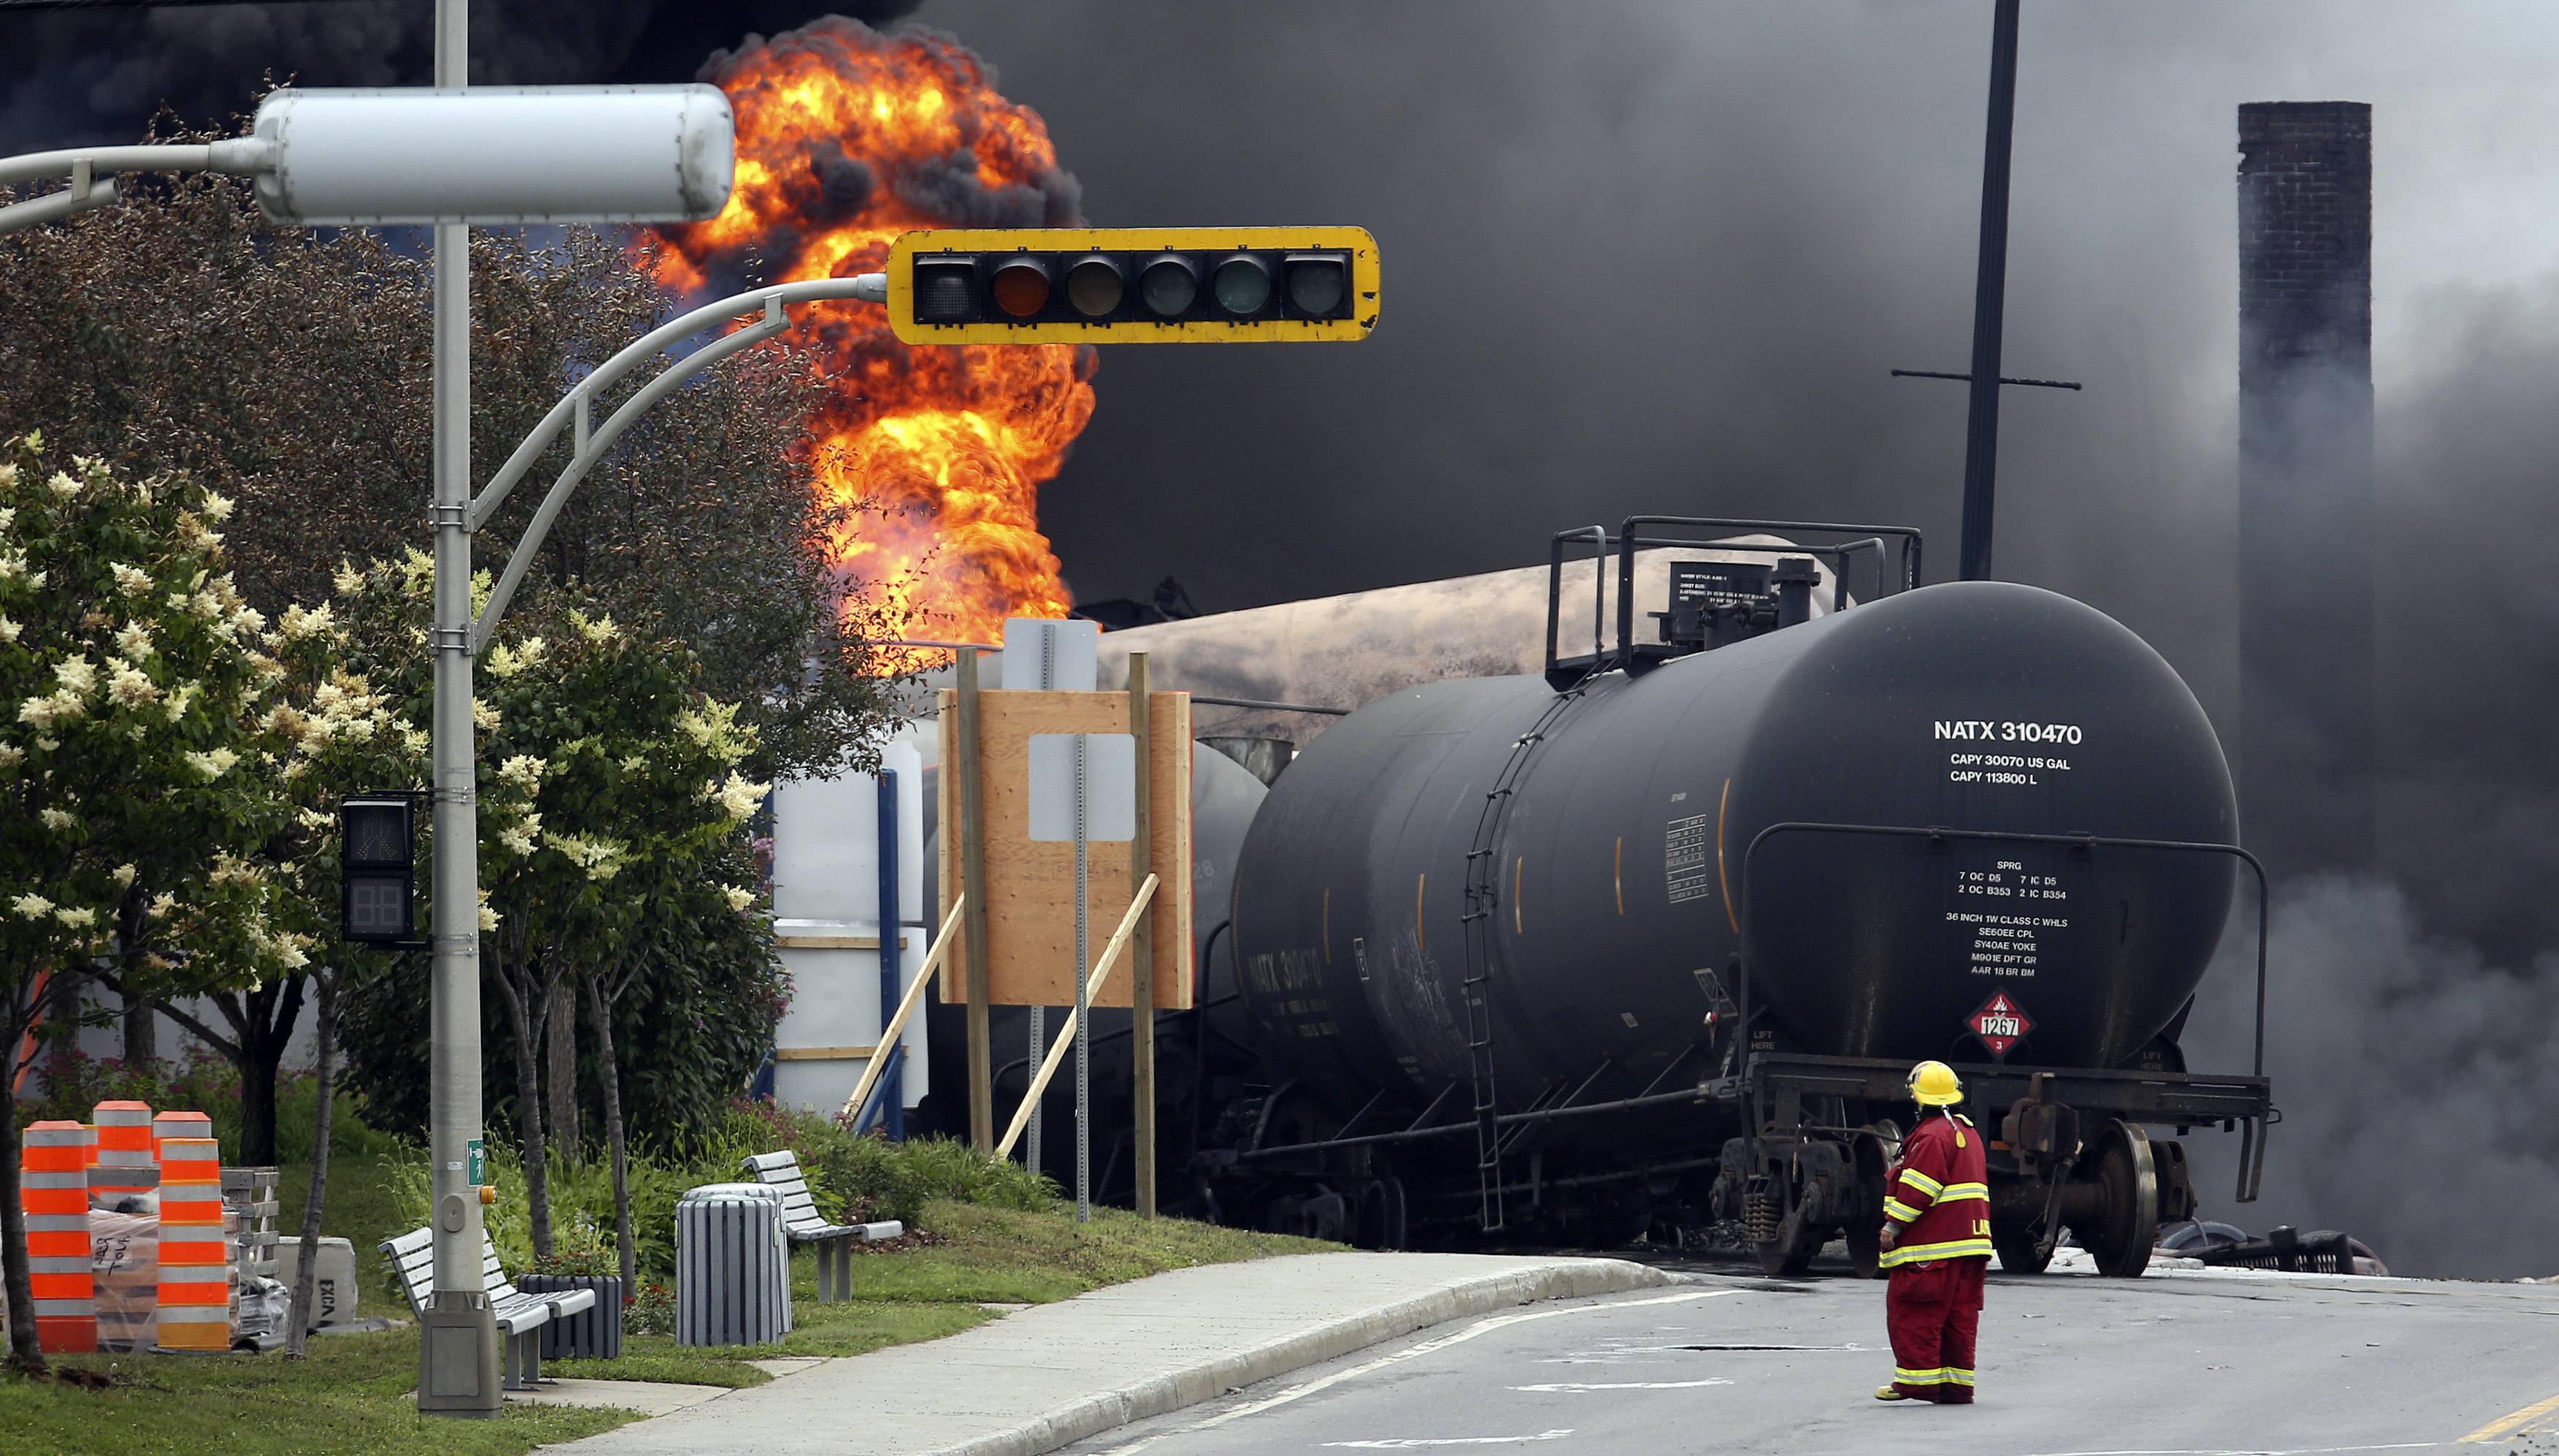 Ευθύνες στον μηχανοδηγό για την ανατροπή και την έκρηξη του τρένου στο Κεμπέκ